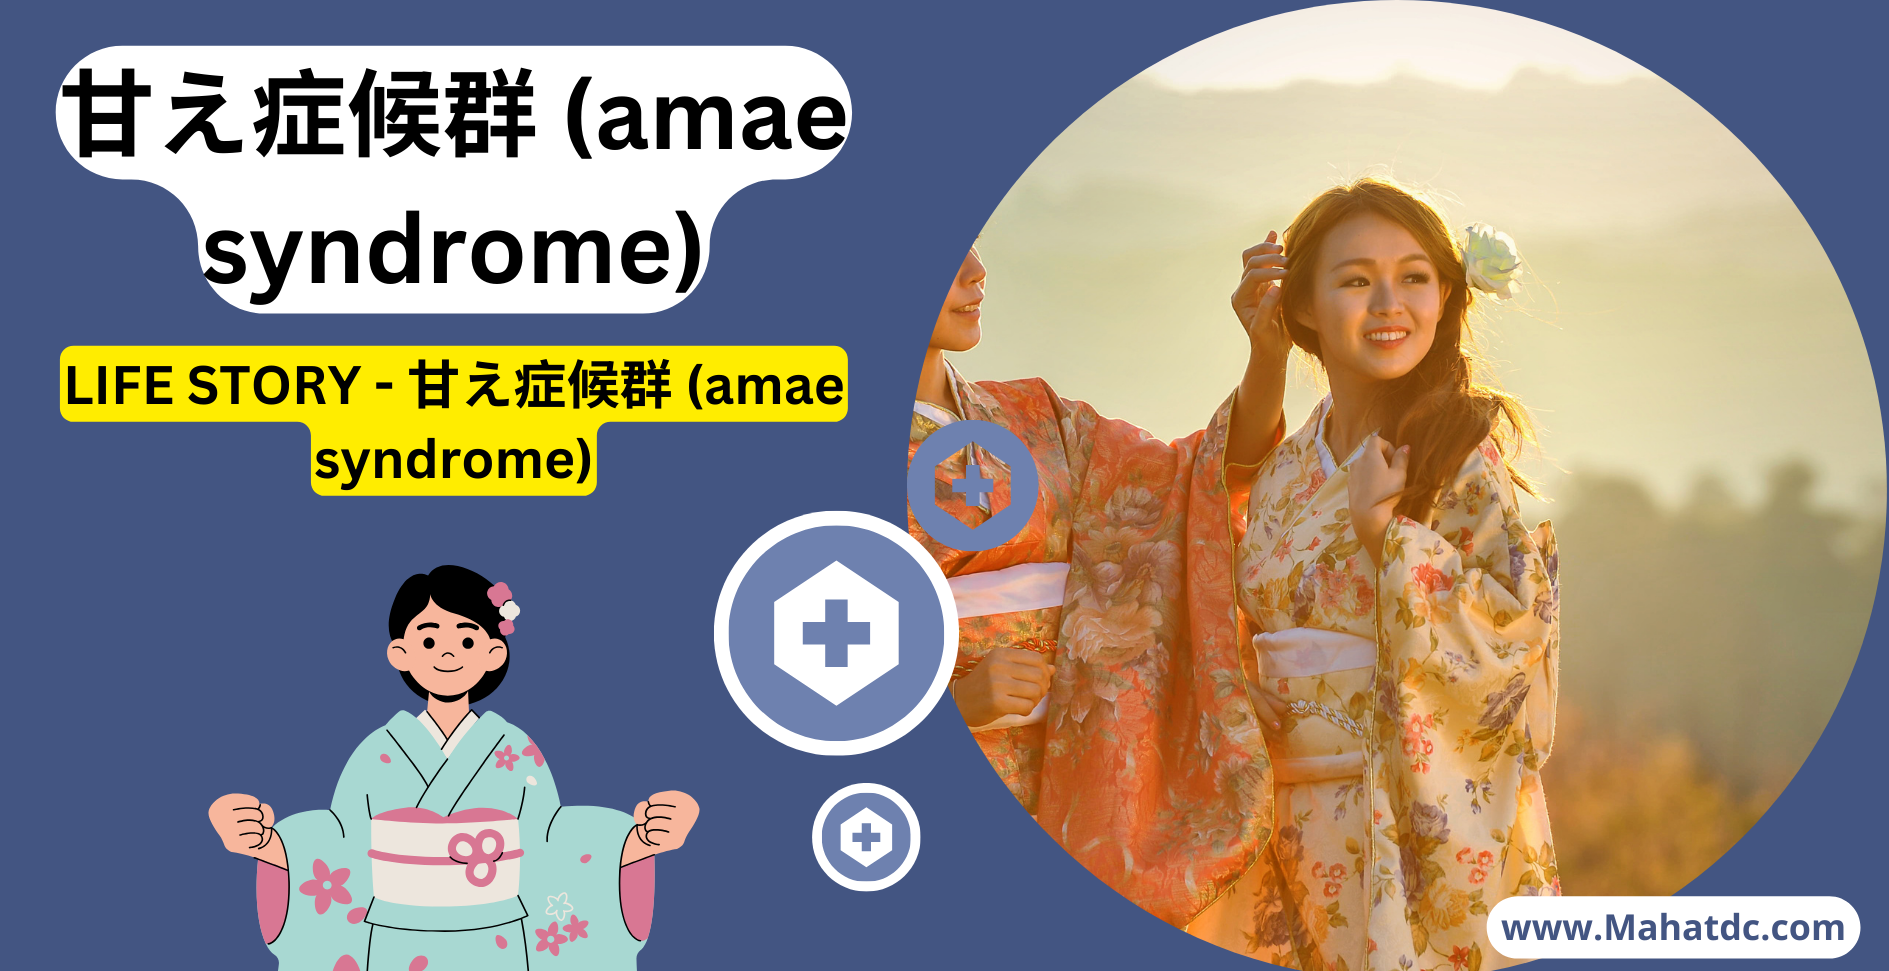 甘え症候群 (amae syndrome)